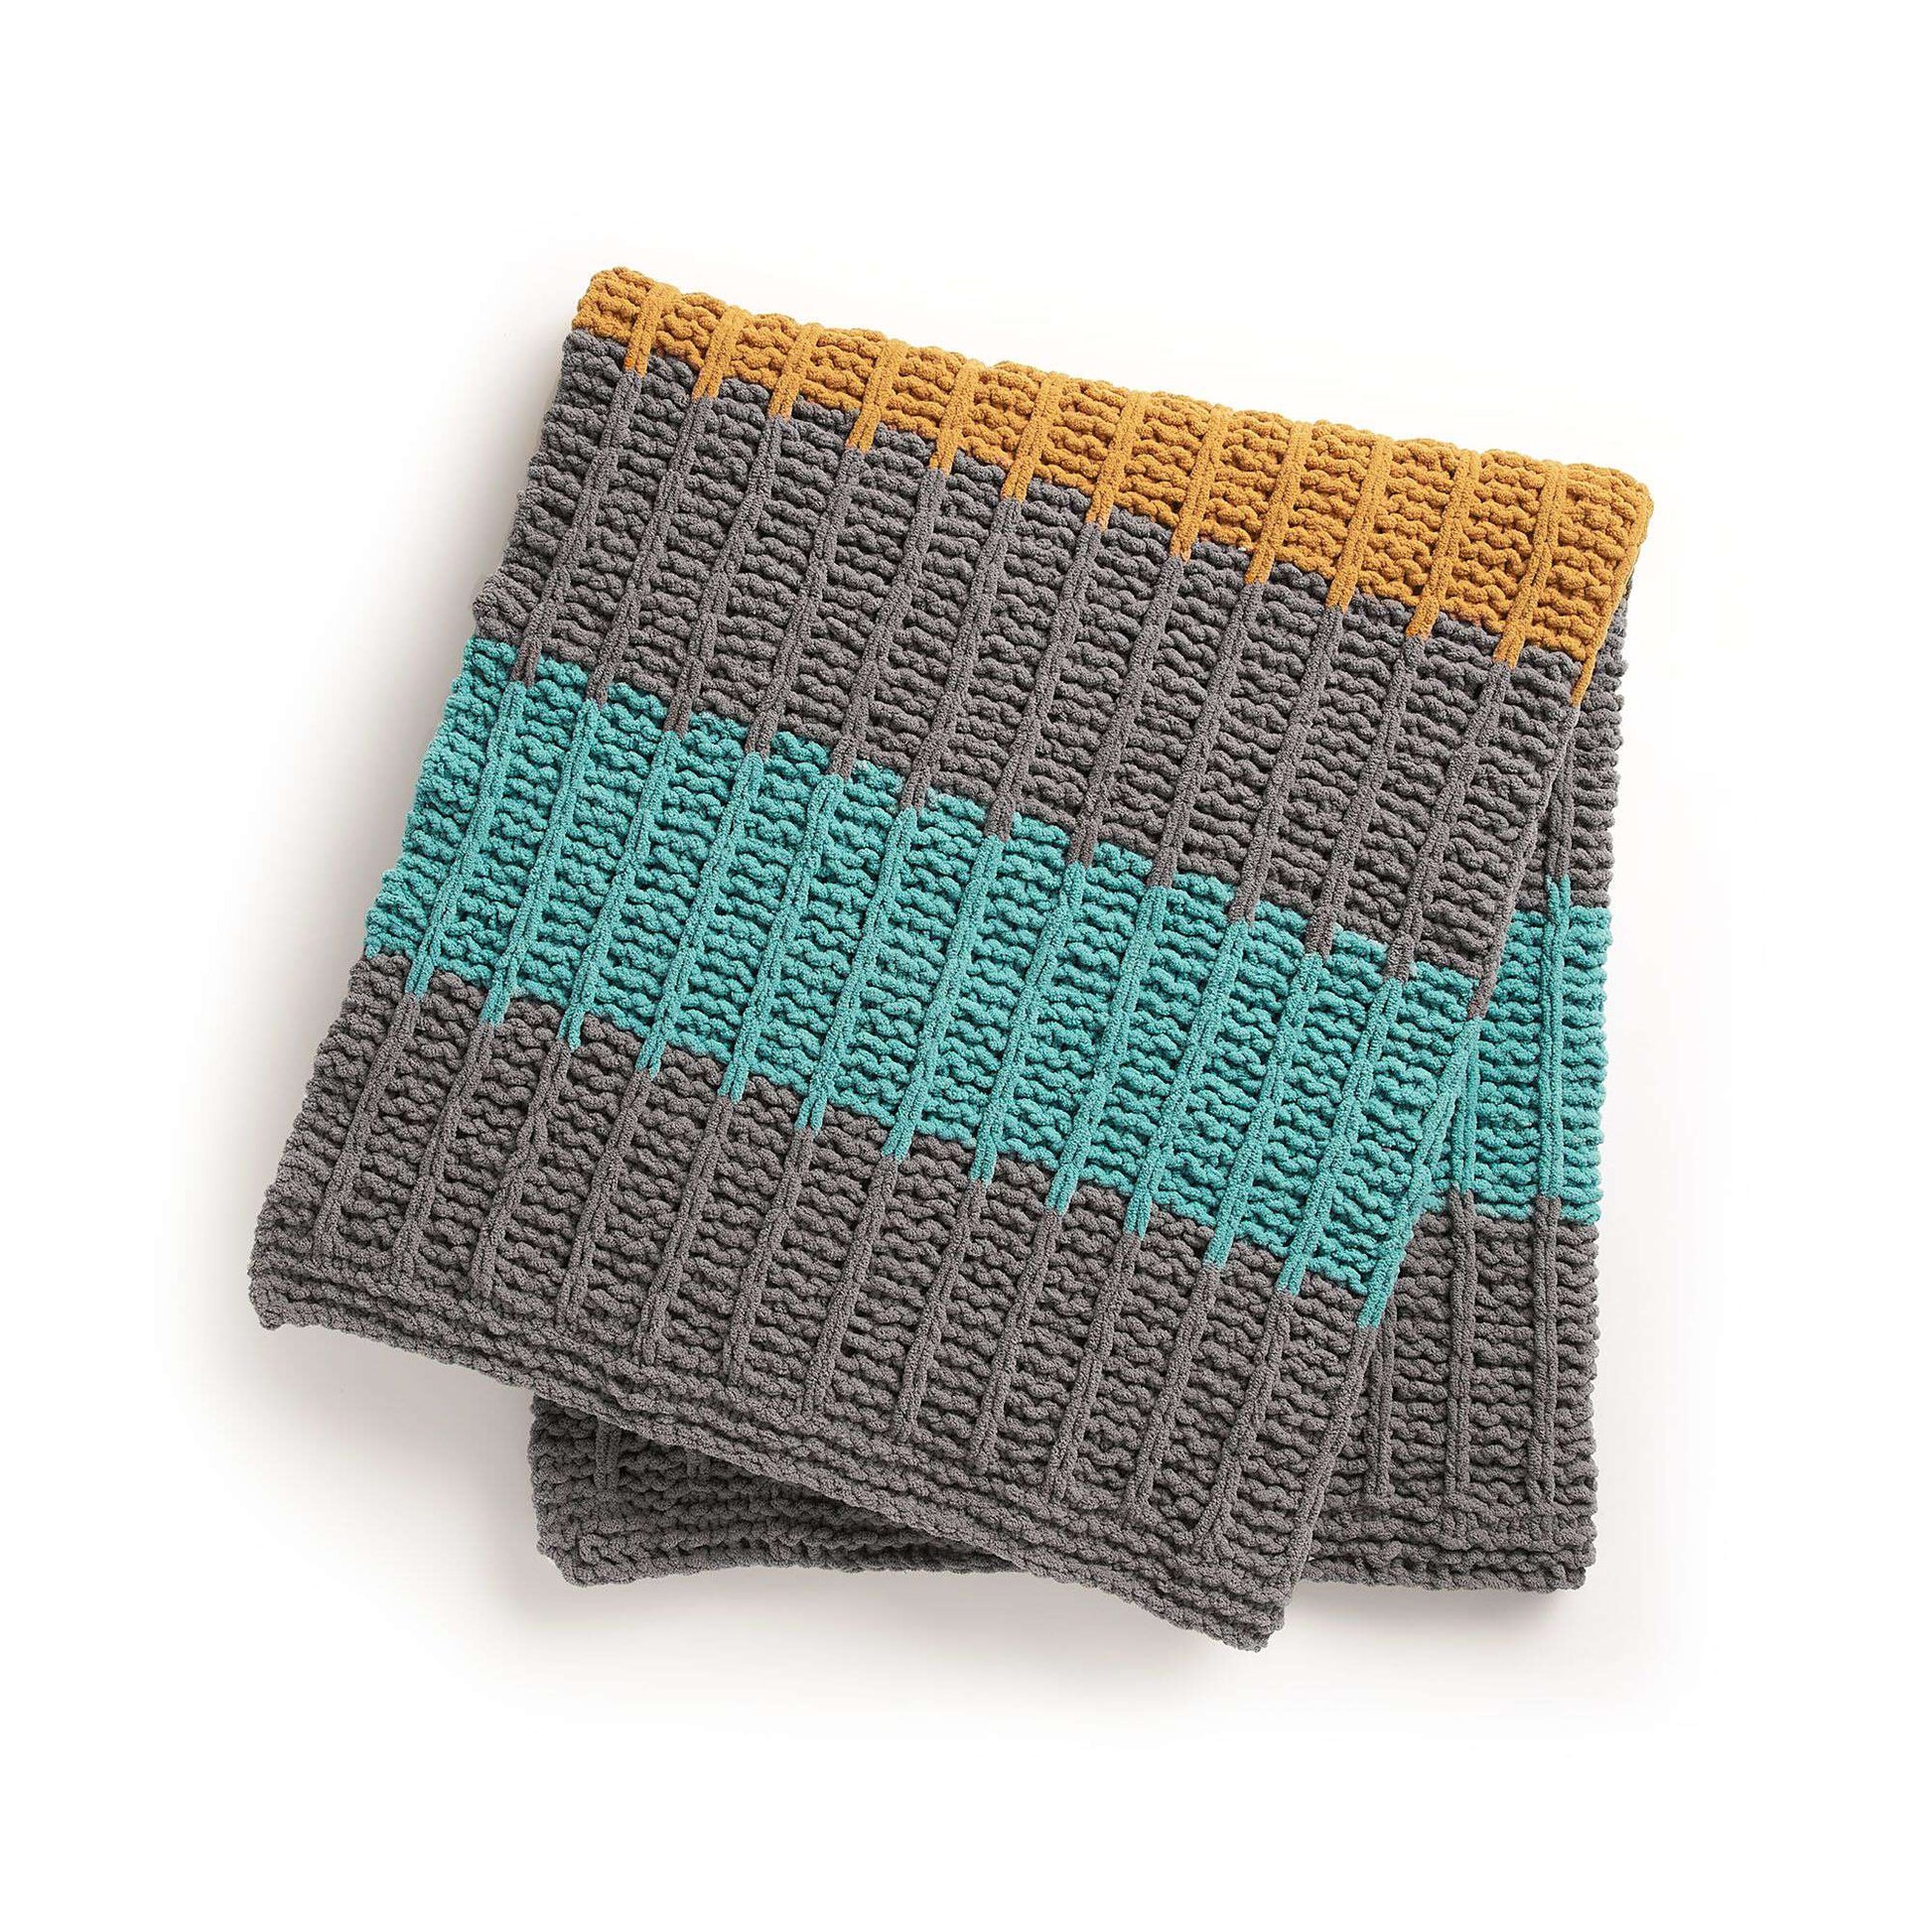 Bernat Soothing Slip Stitches Knit Blanket​ Pattern